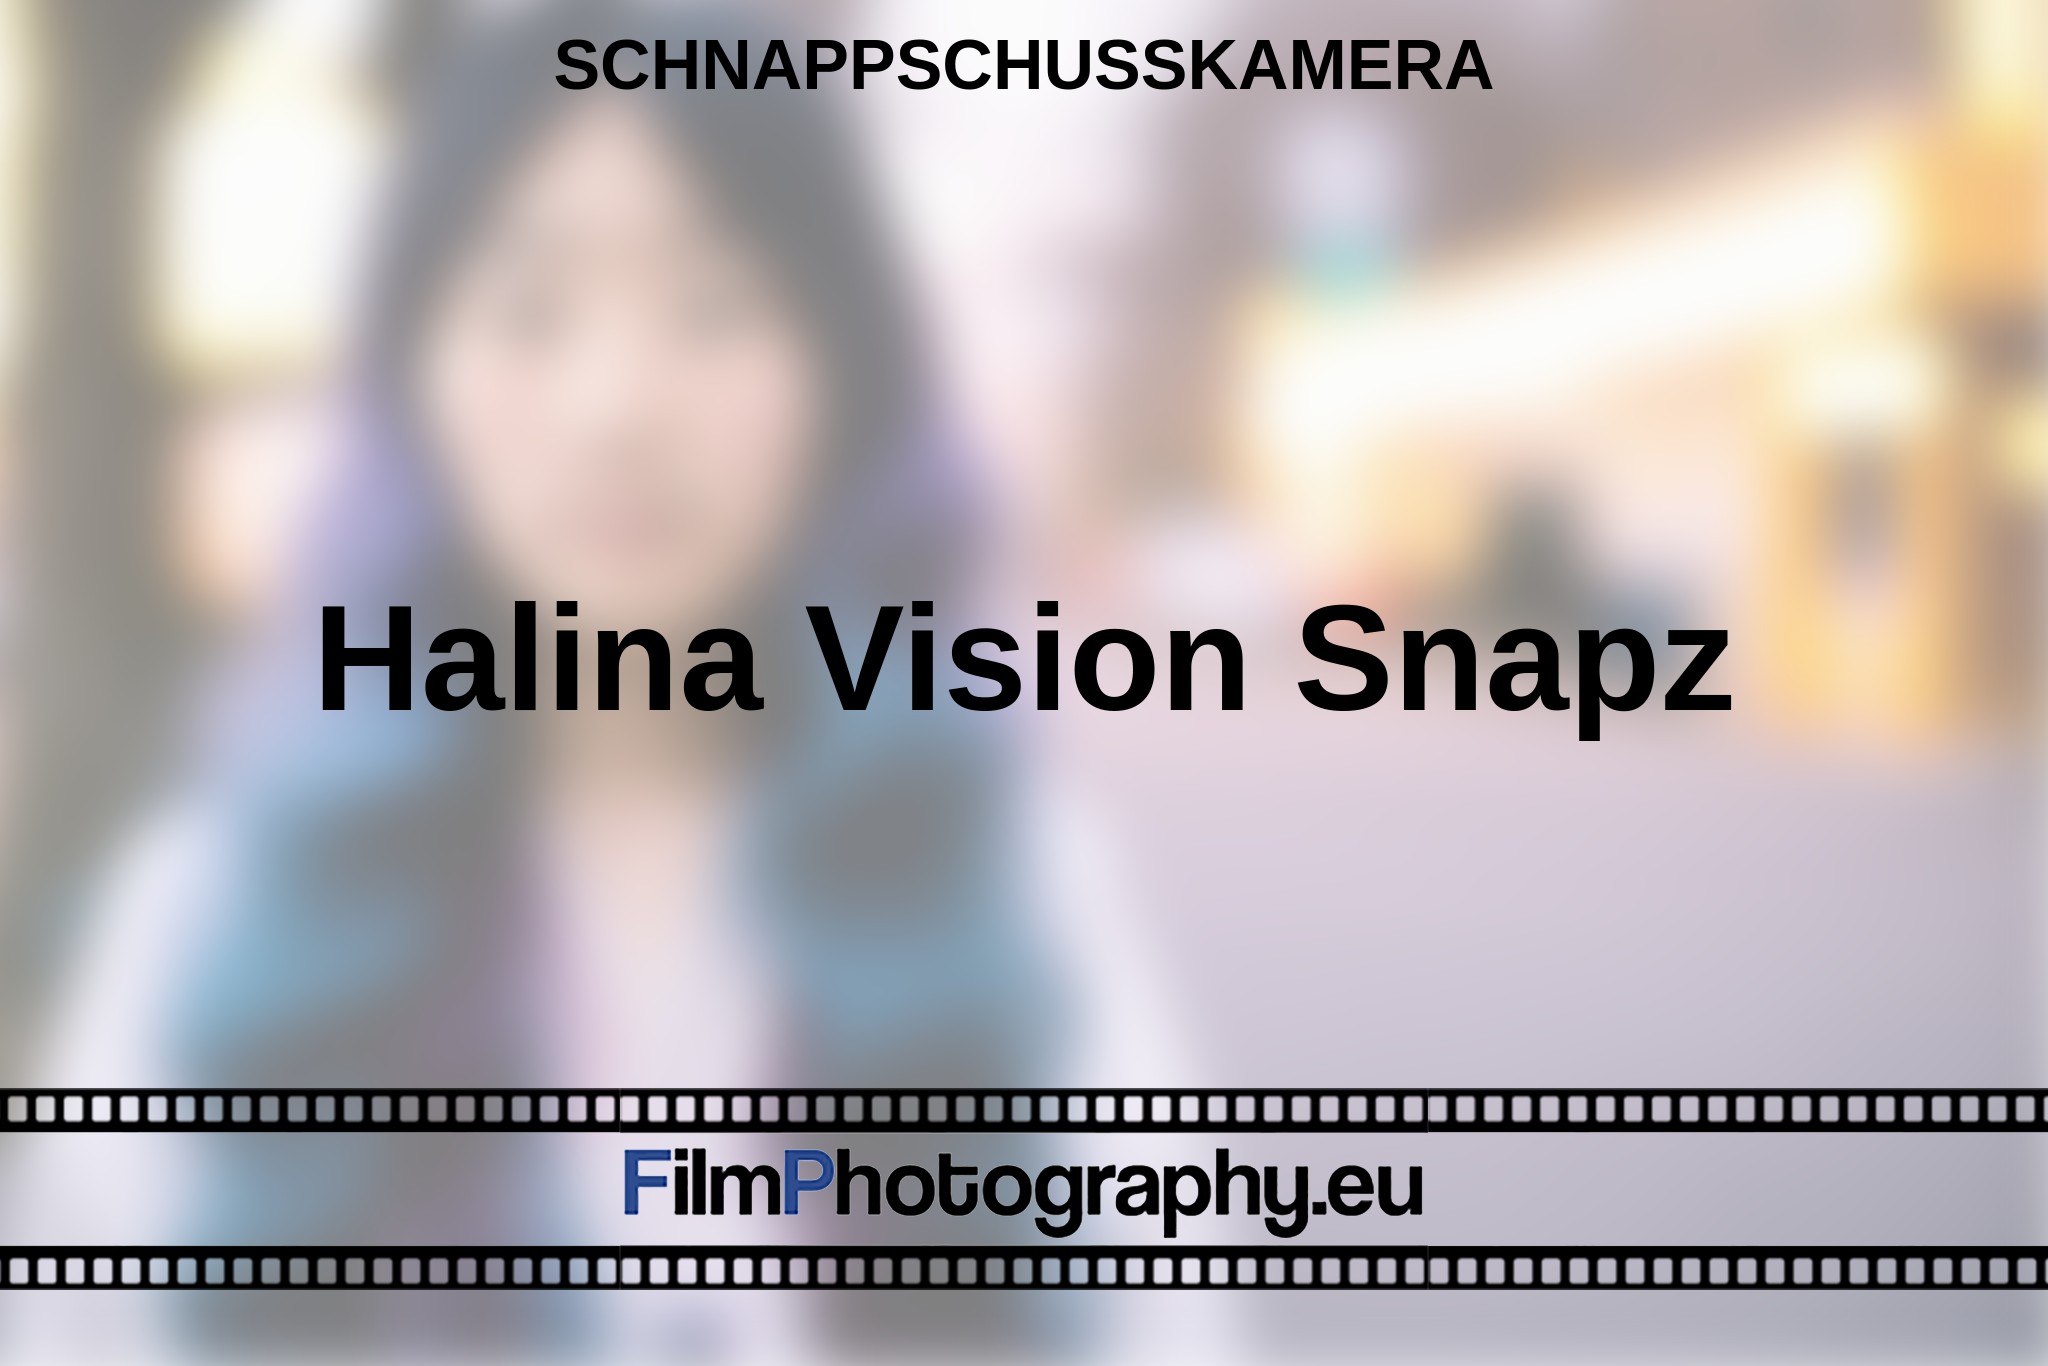 halina-vision-snapz-schnappschusskamera-bnv.jpg